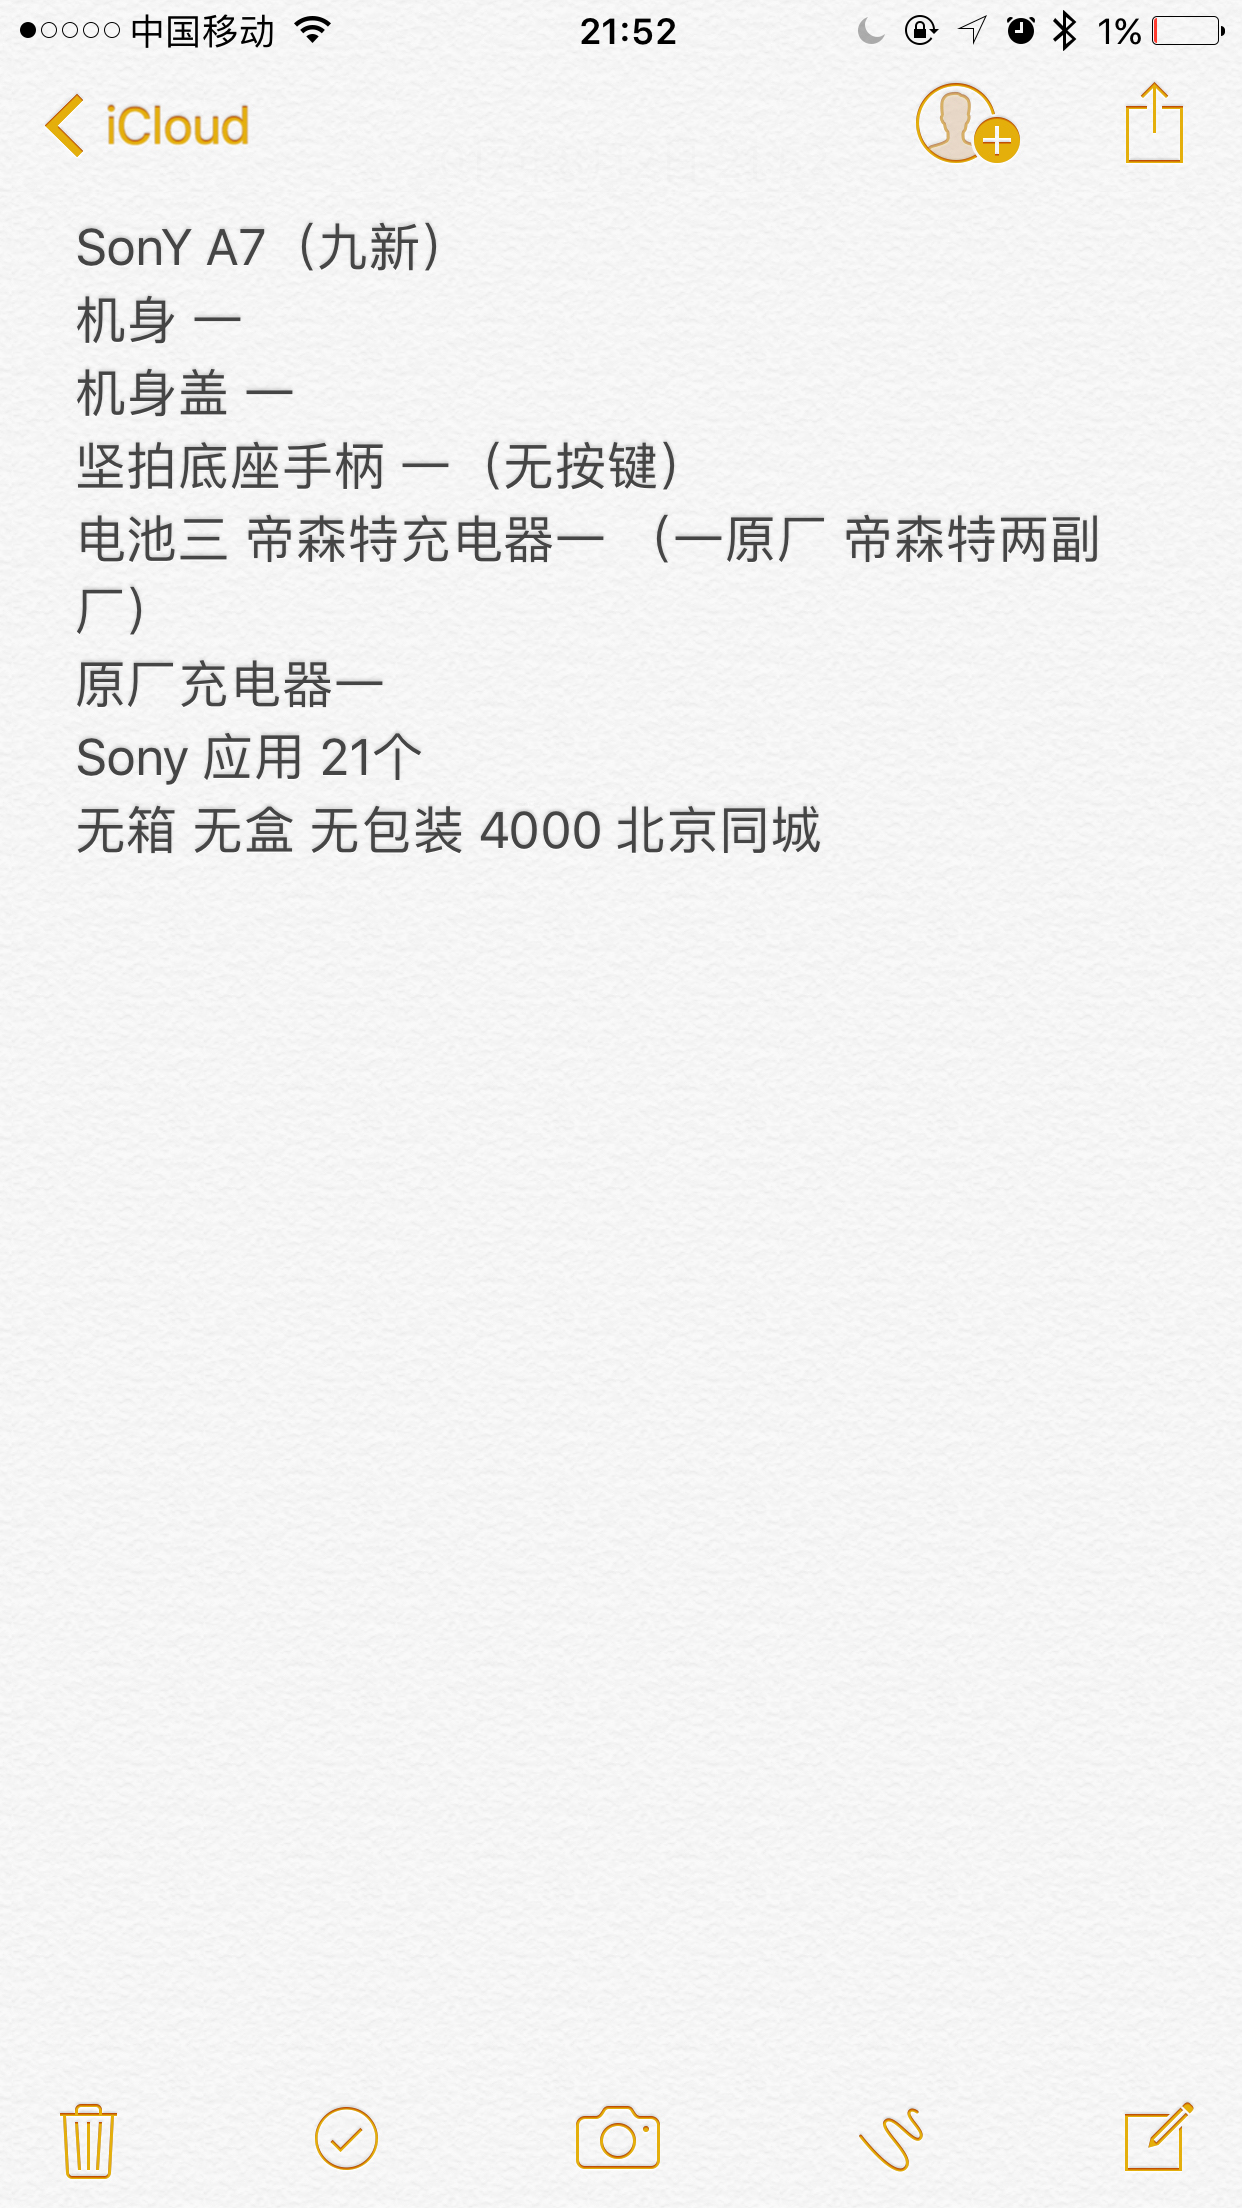 索尼 ILCE-7 8成新索尼A7机身SONYA7机身北京同城面交 